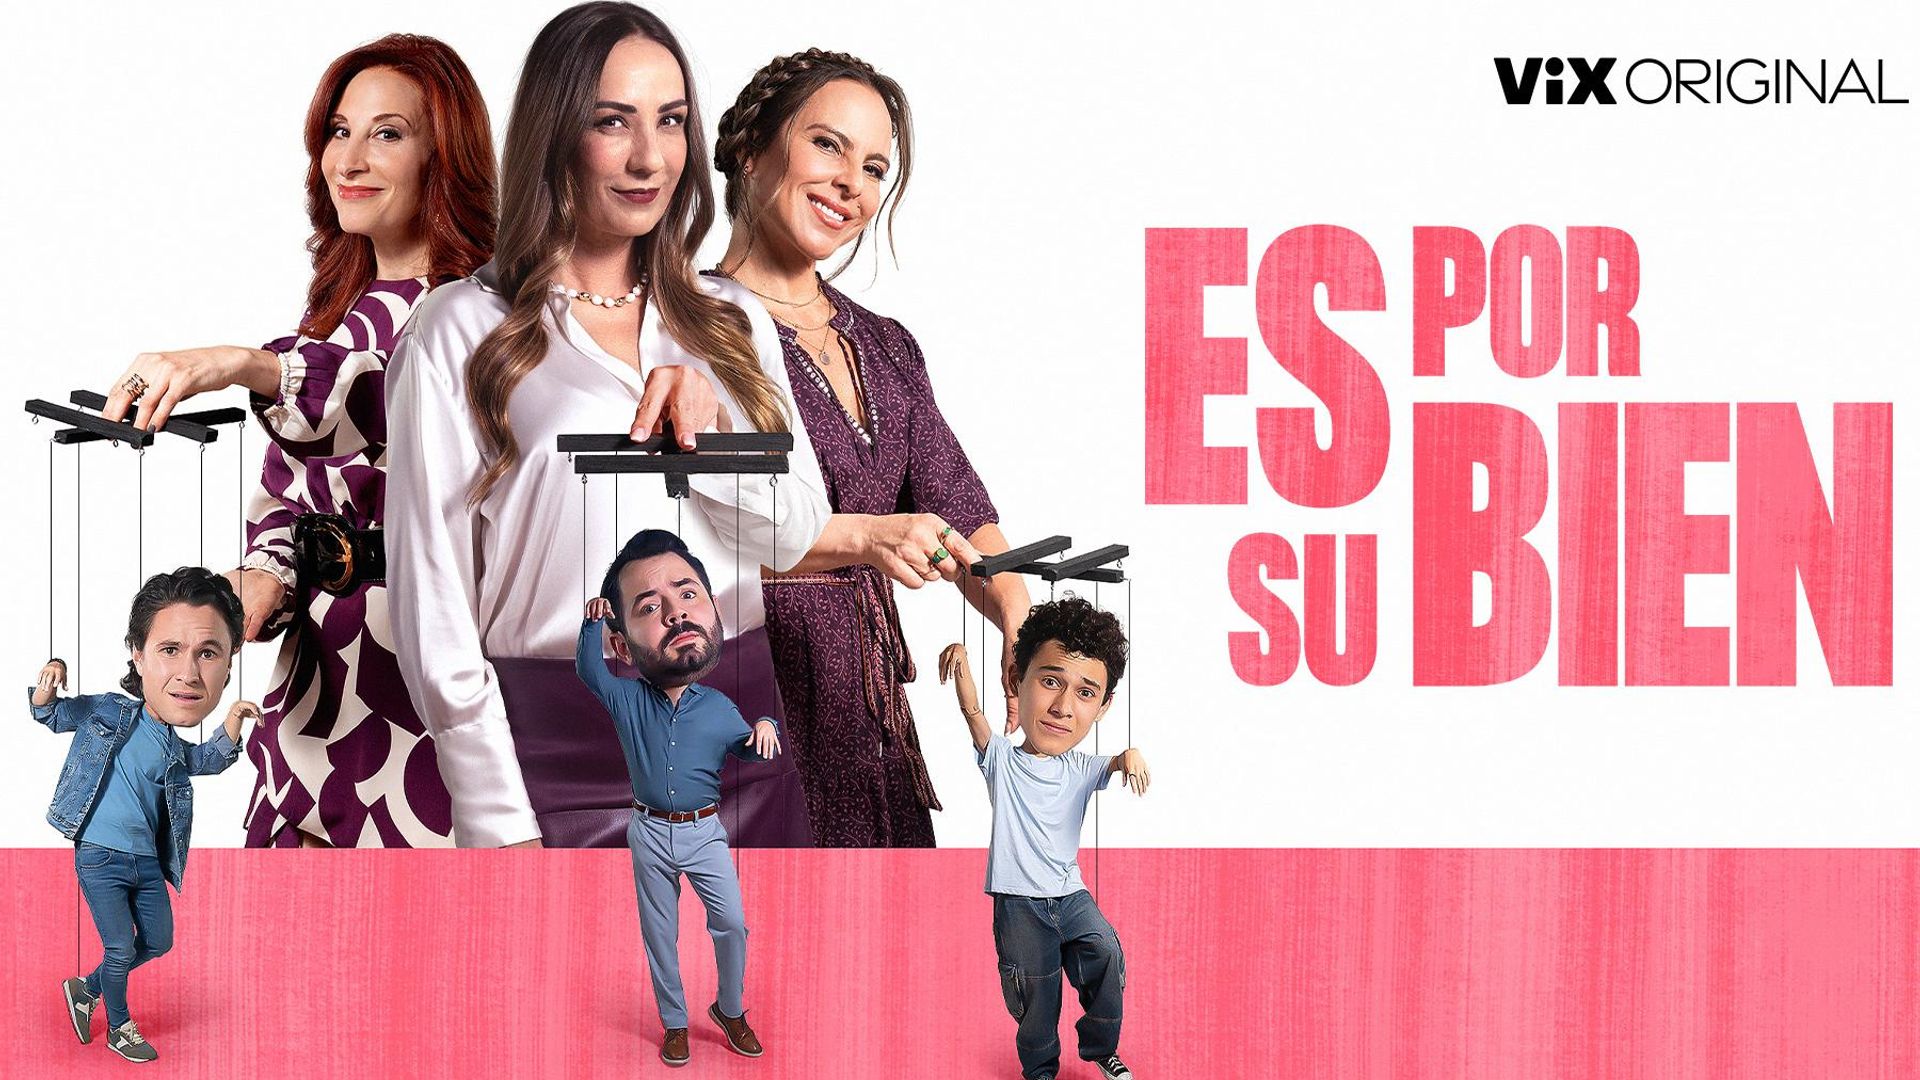 Kate del Castillo debuta en la comedia con ‘Es por su bien’, junto a Consuelo Duval y Mónica Huarte